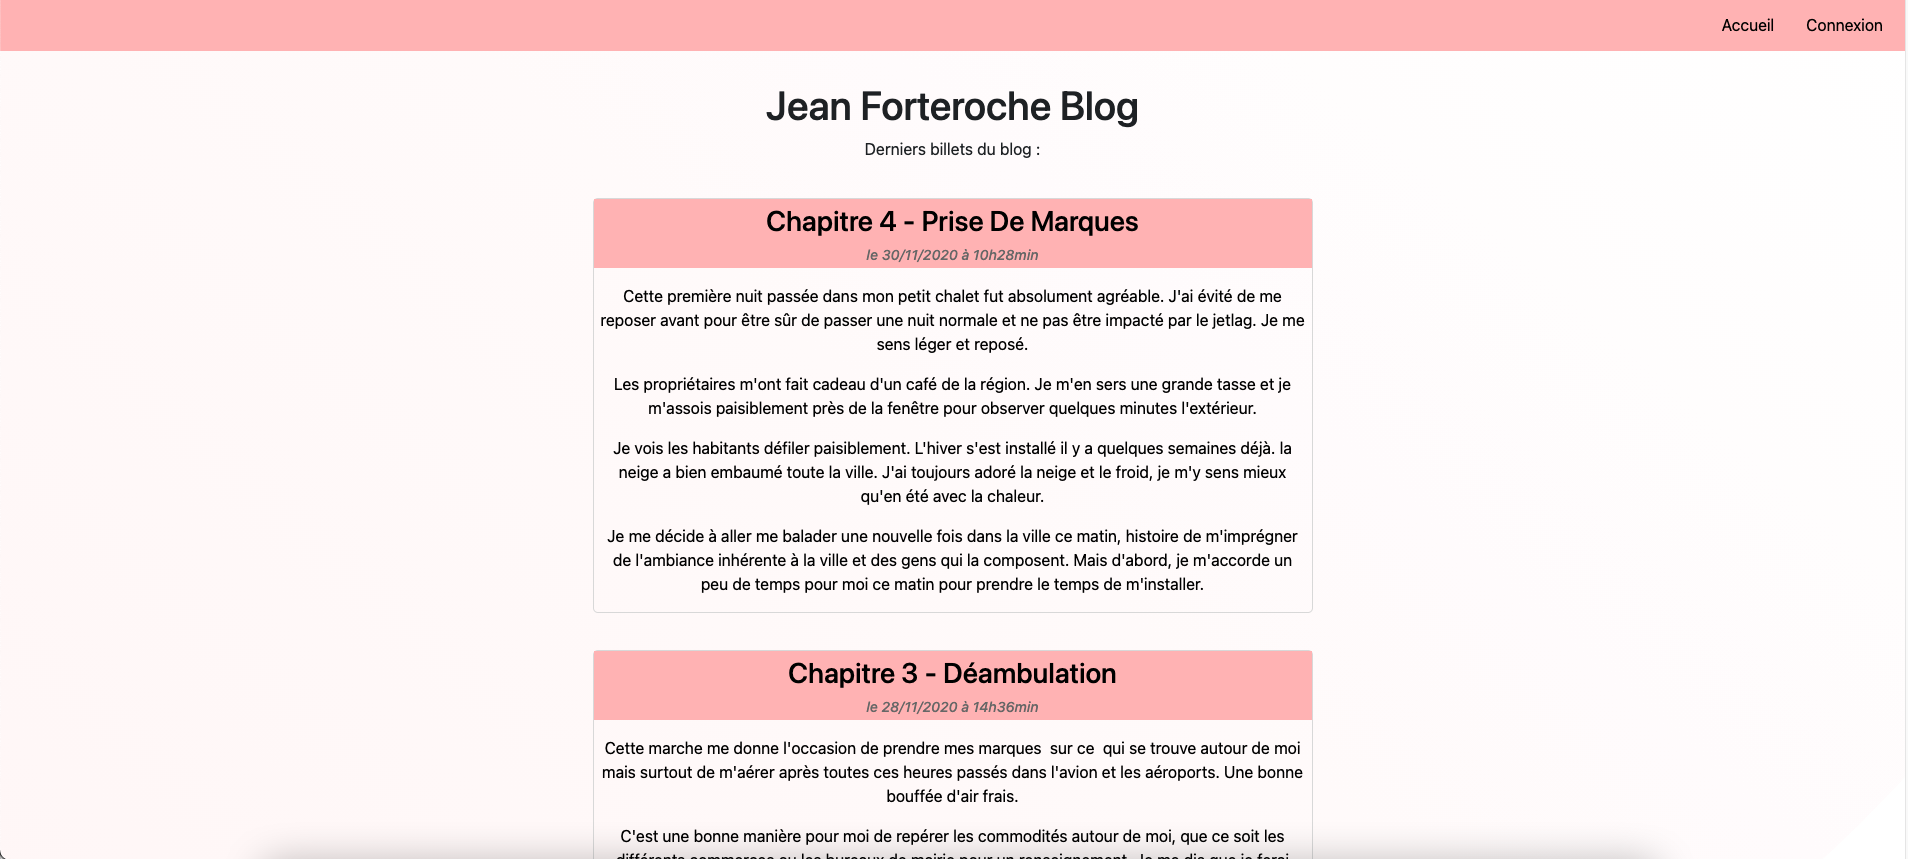 Blog Jean Forteroche